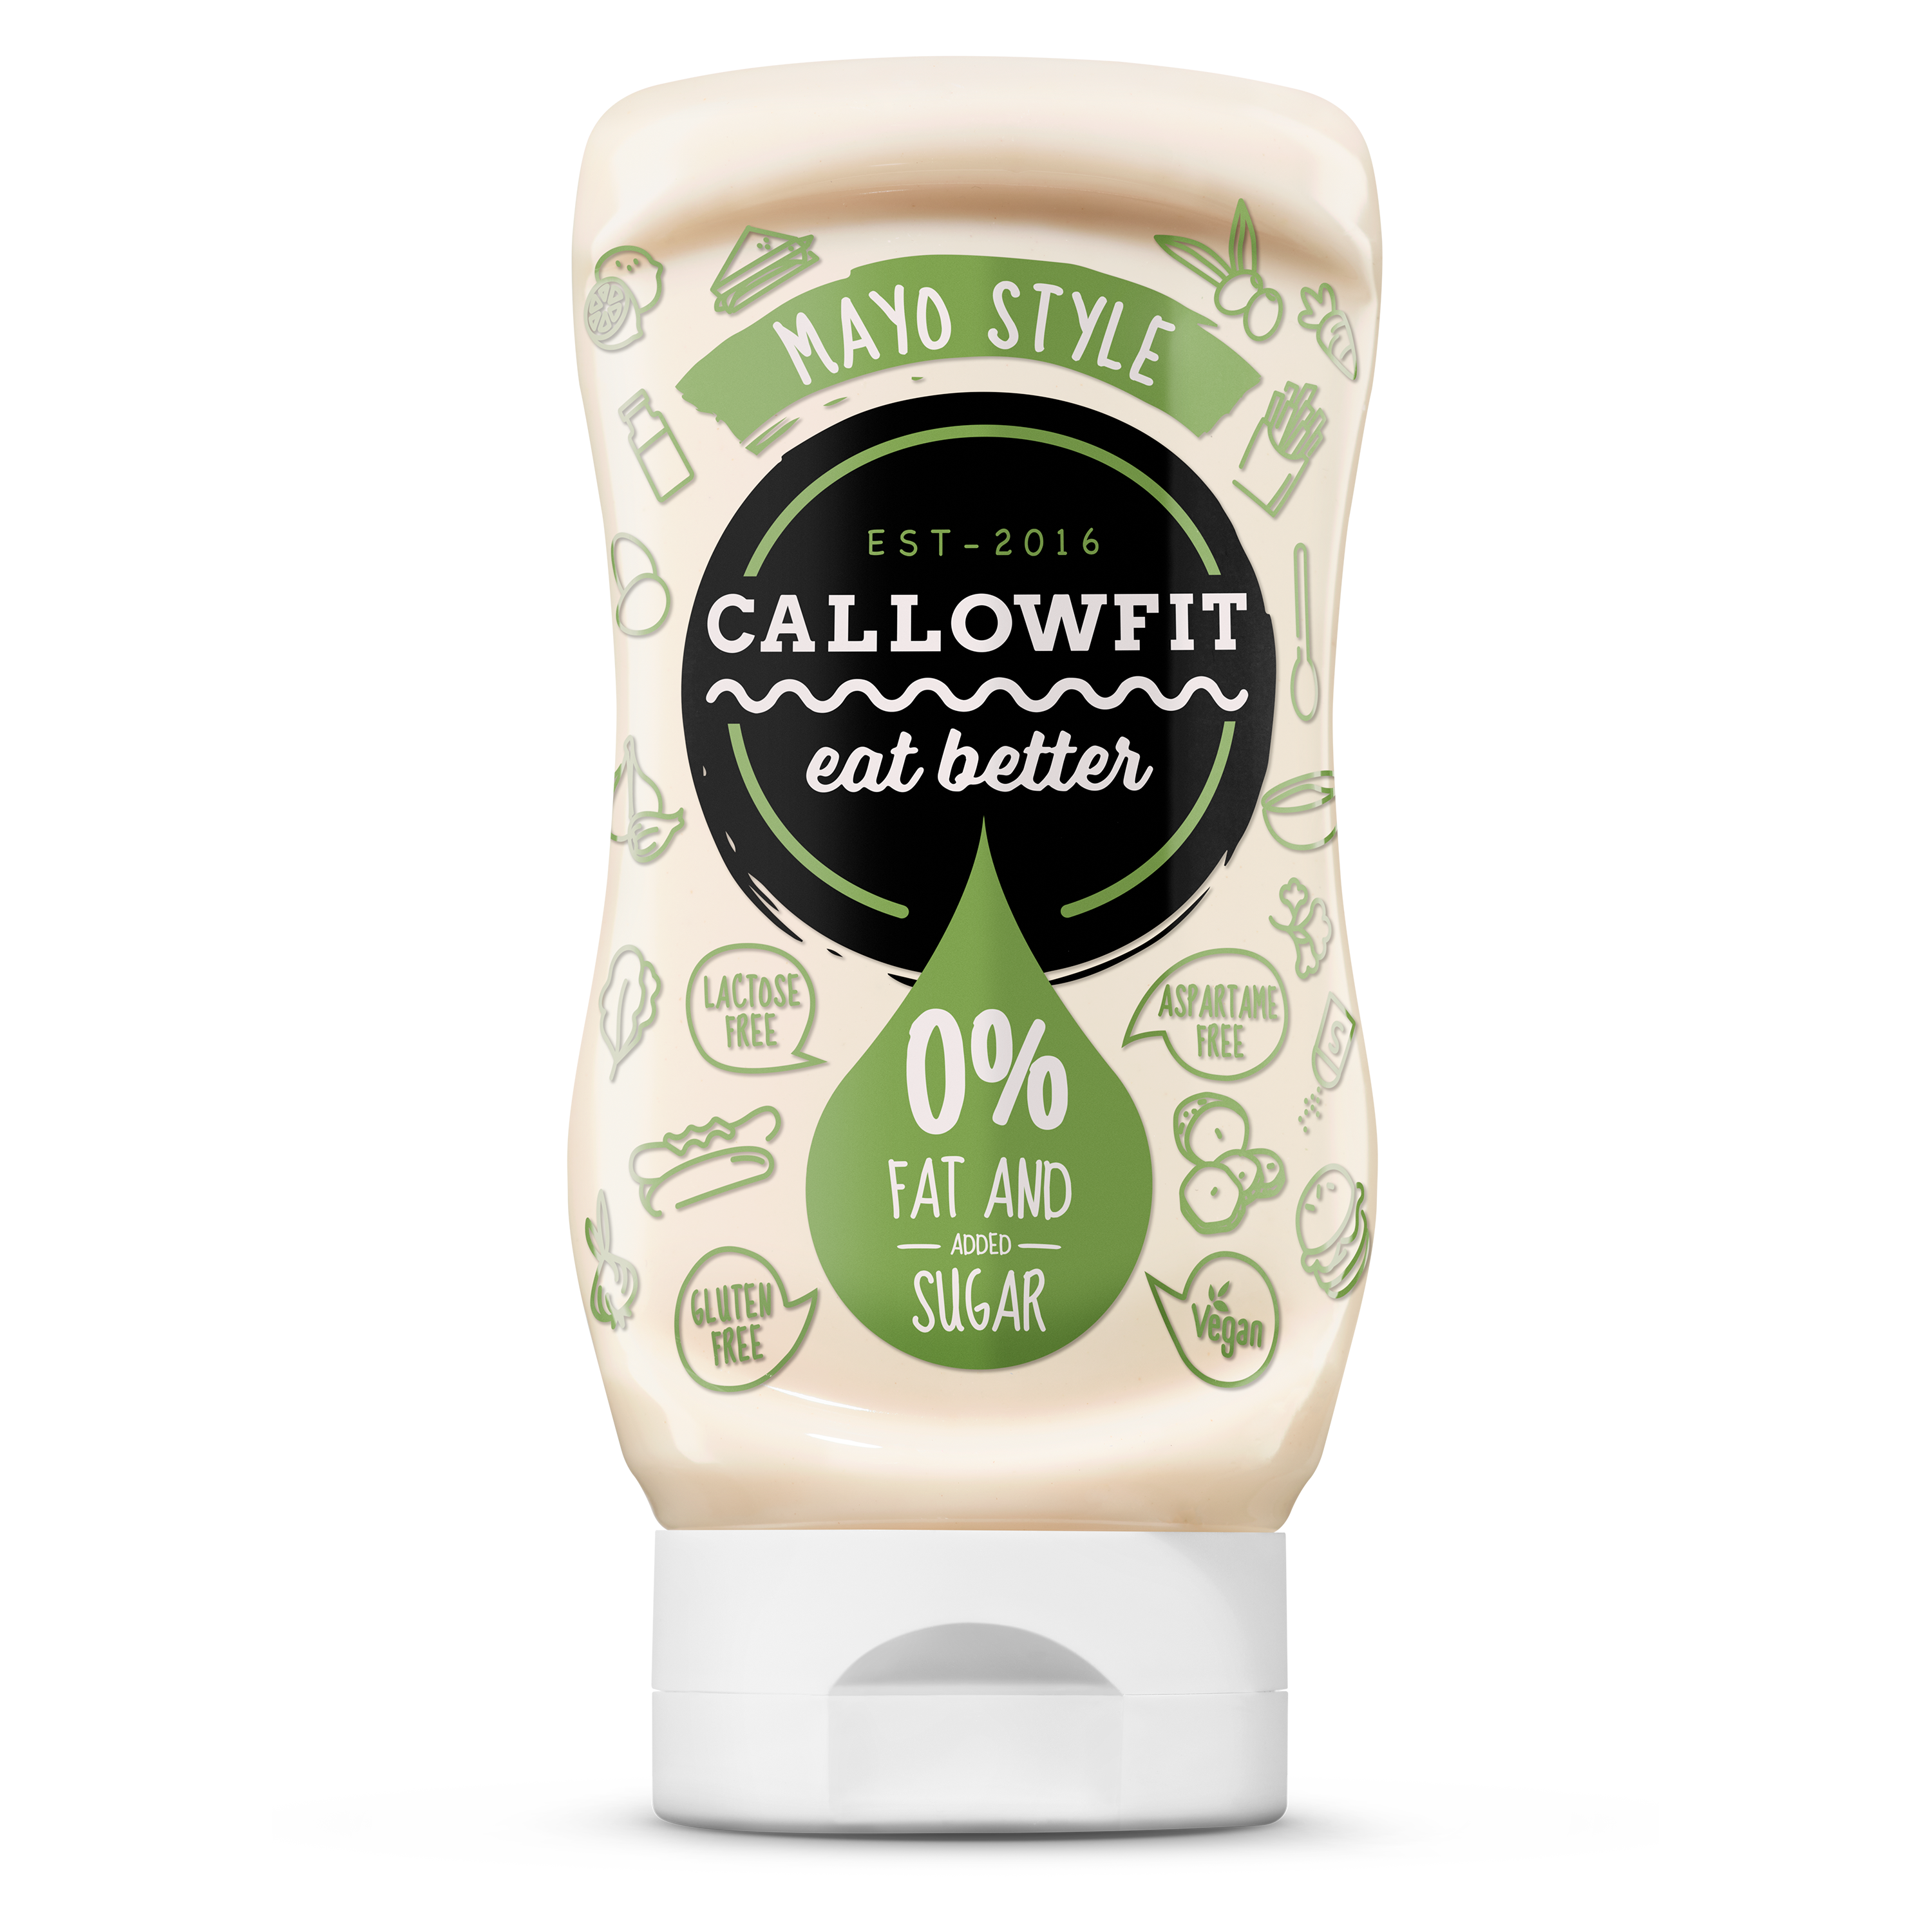 CALLOWFIT Sauce im Geschmack Mayo Style mit 0% Fett und Zucker in einer Tube mit bunten Aufdruck.